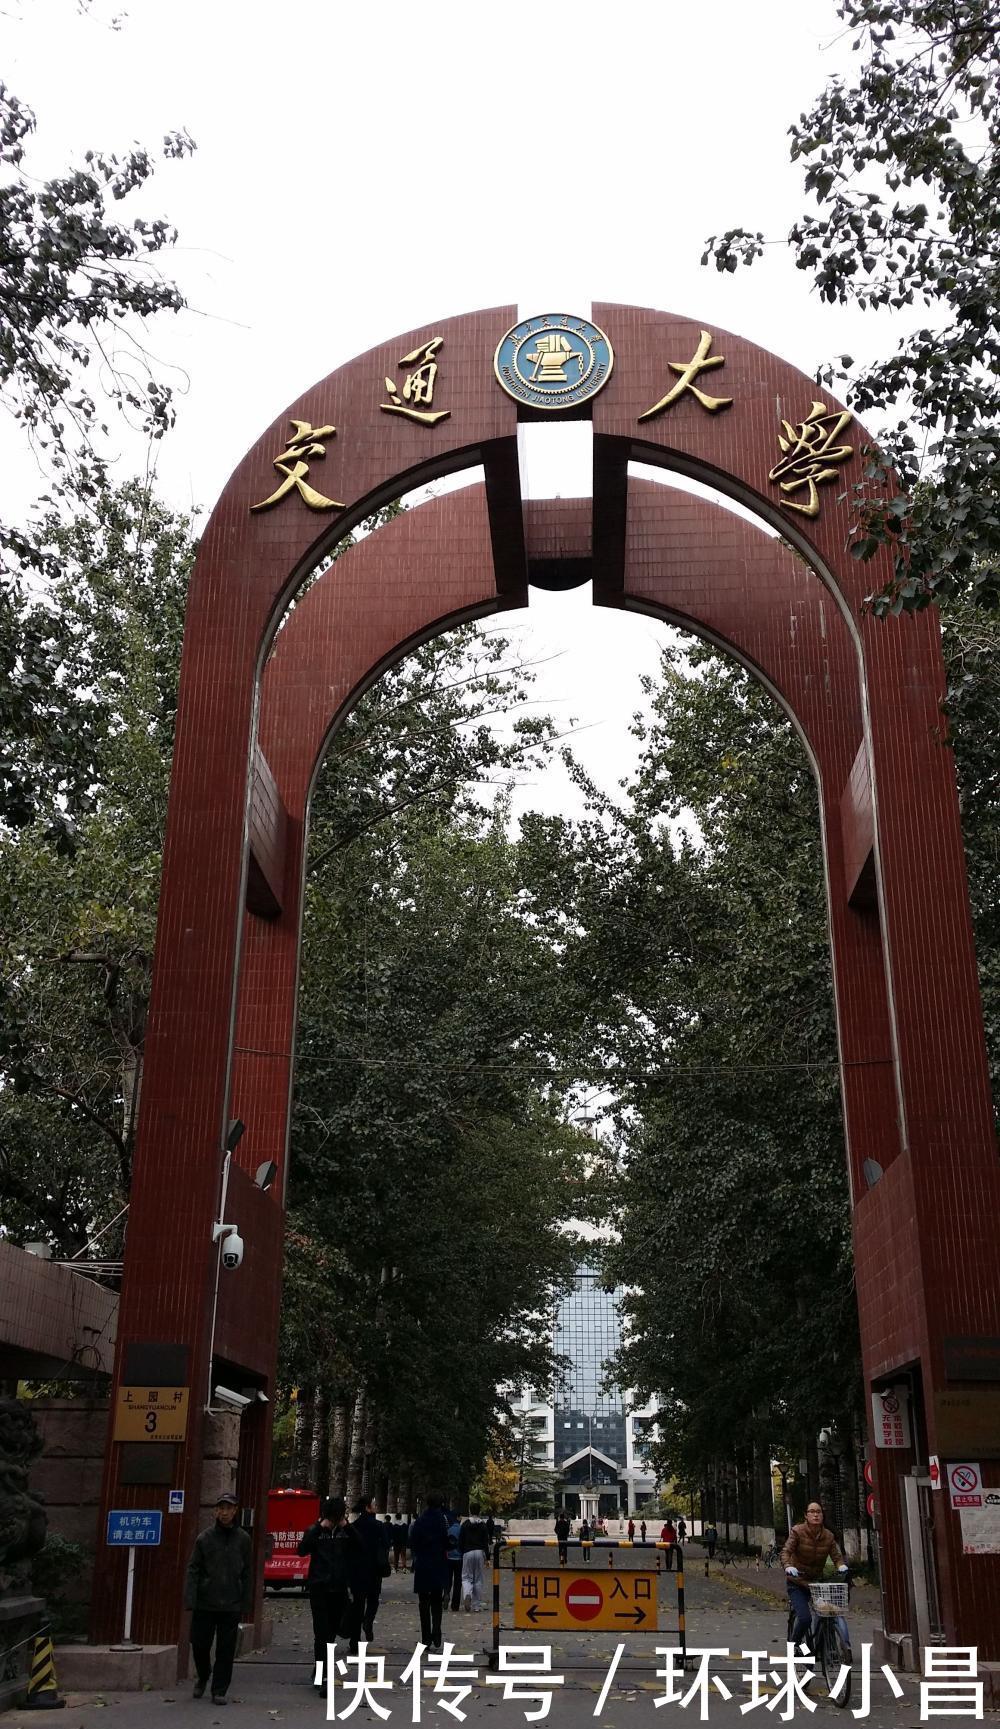 原来的北方交通大学, 改名北京交通大学后, 实